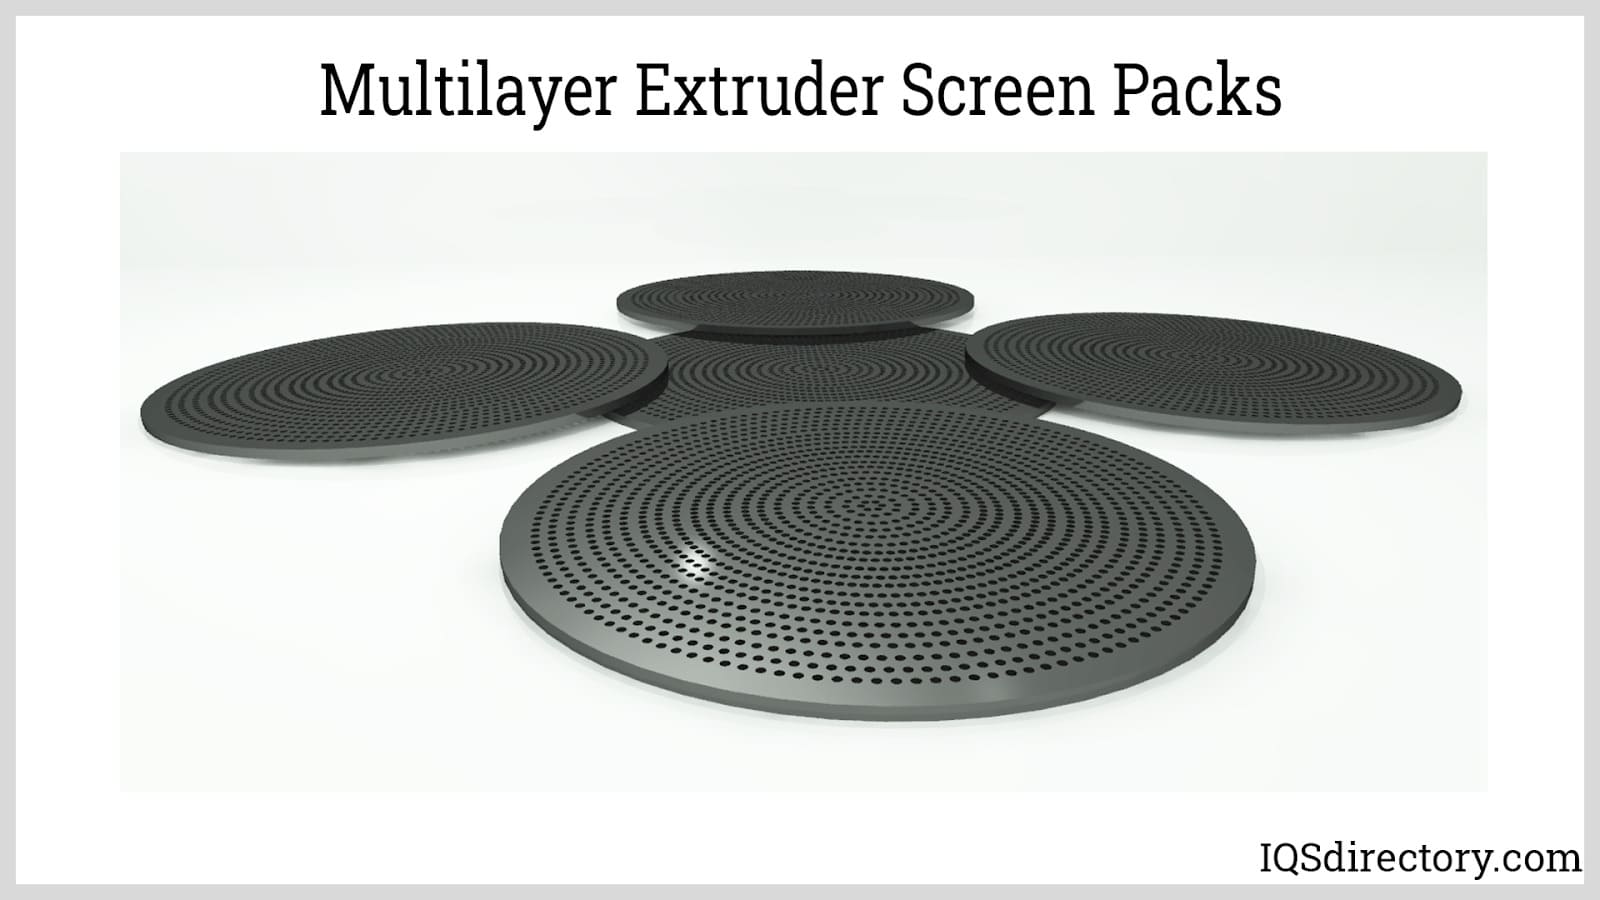 Multilayer Extruder Screen Packs